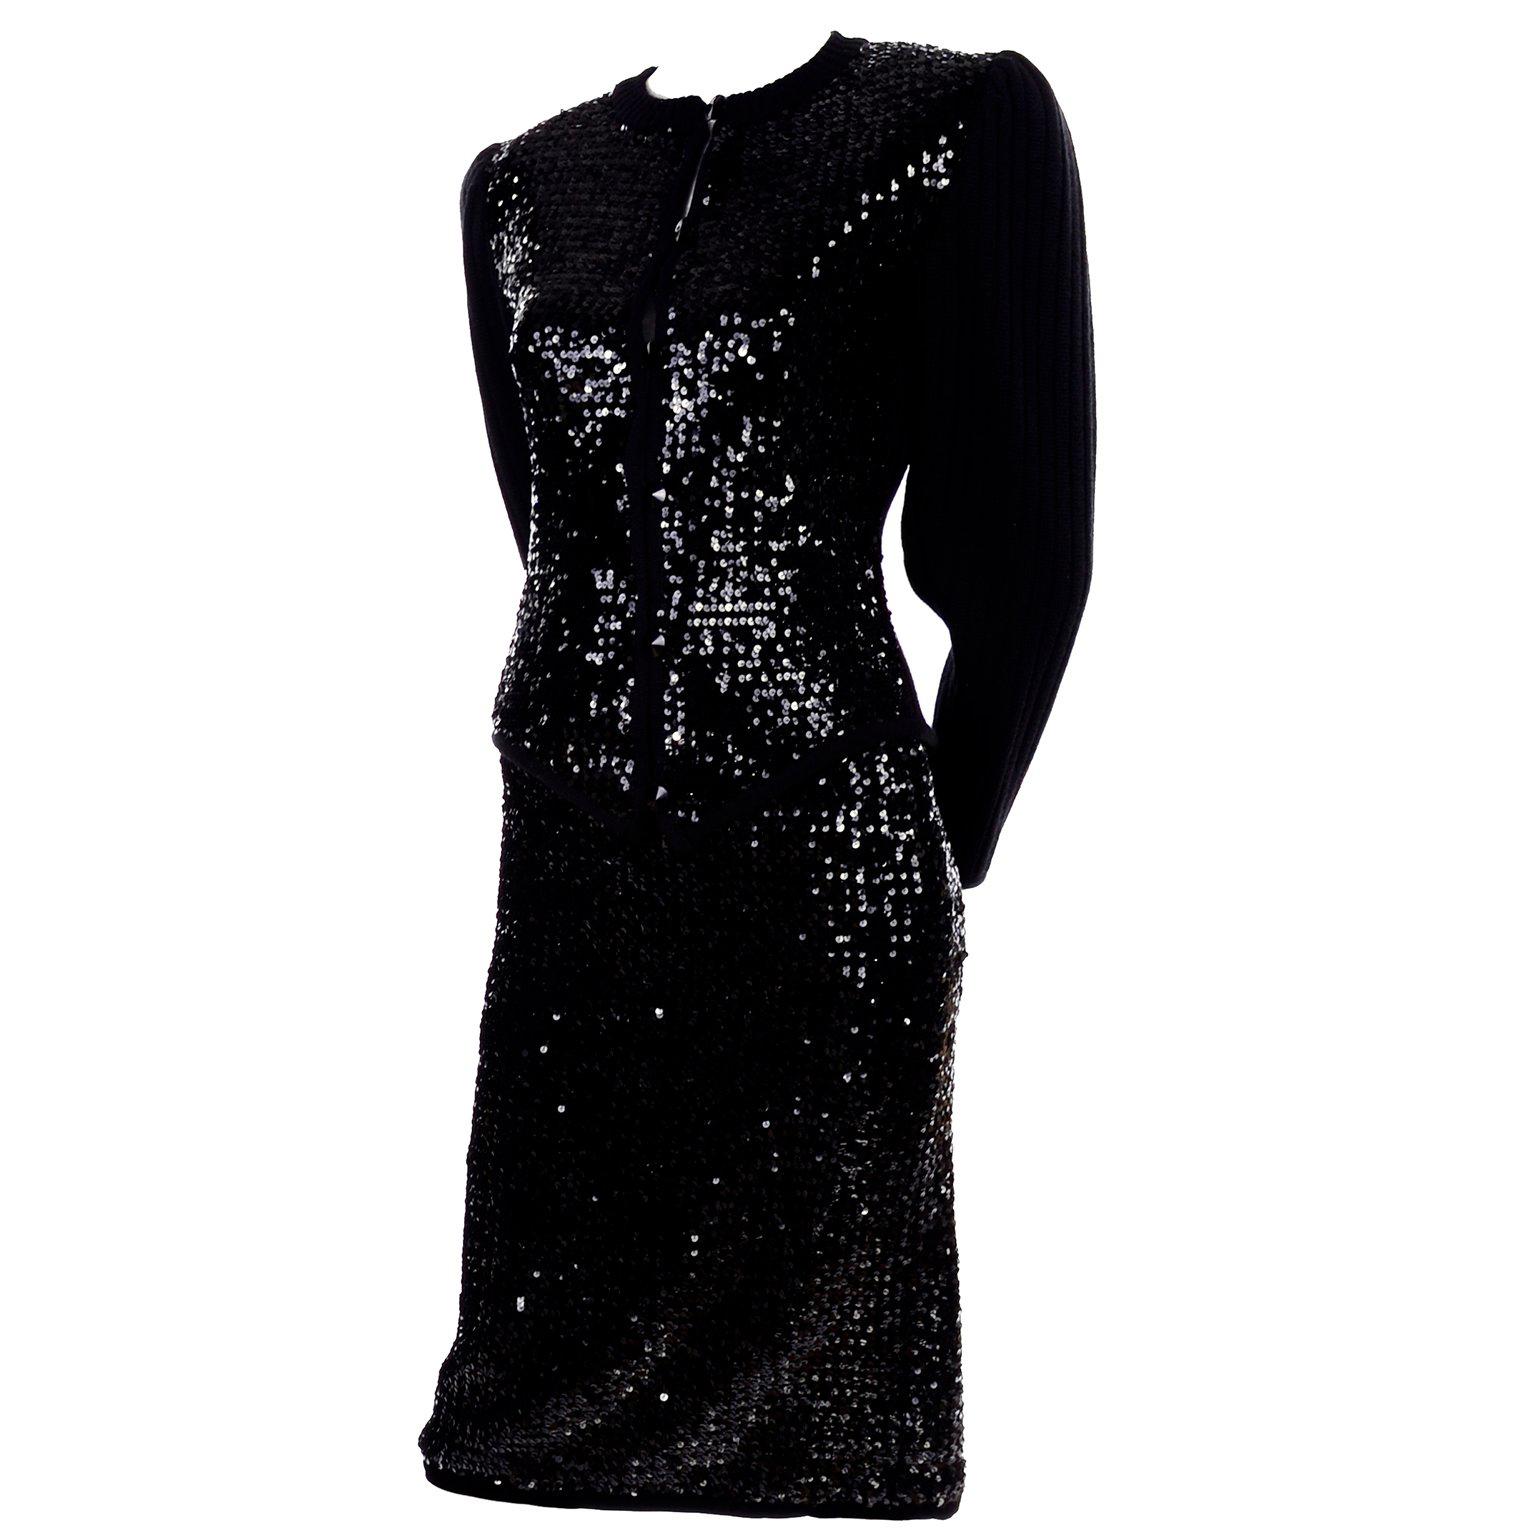 Vintage Yves Saint Laurent Evening Dress Alternative Black Skirt Suit W/ Sequins